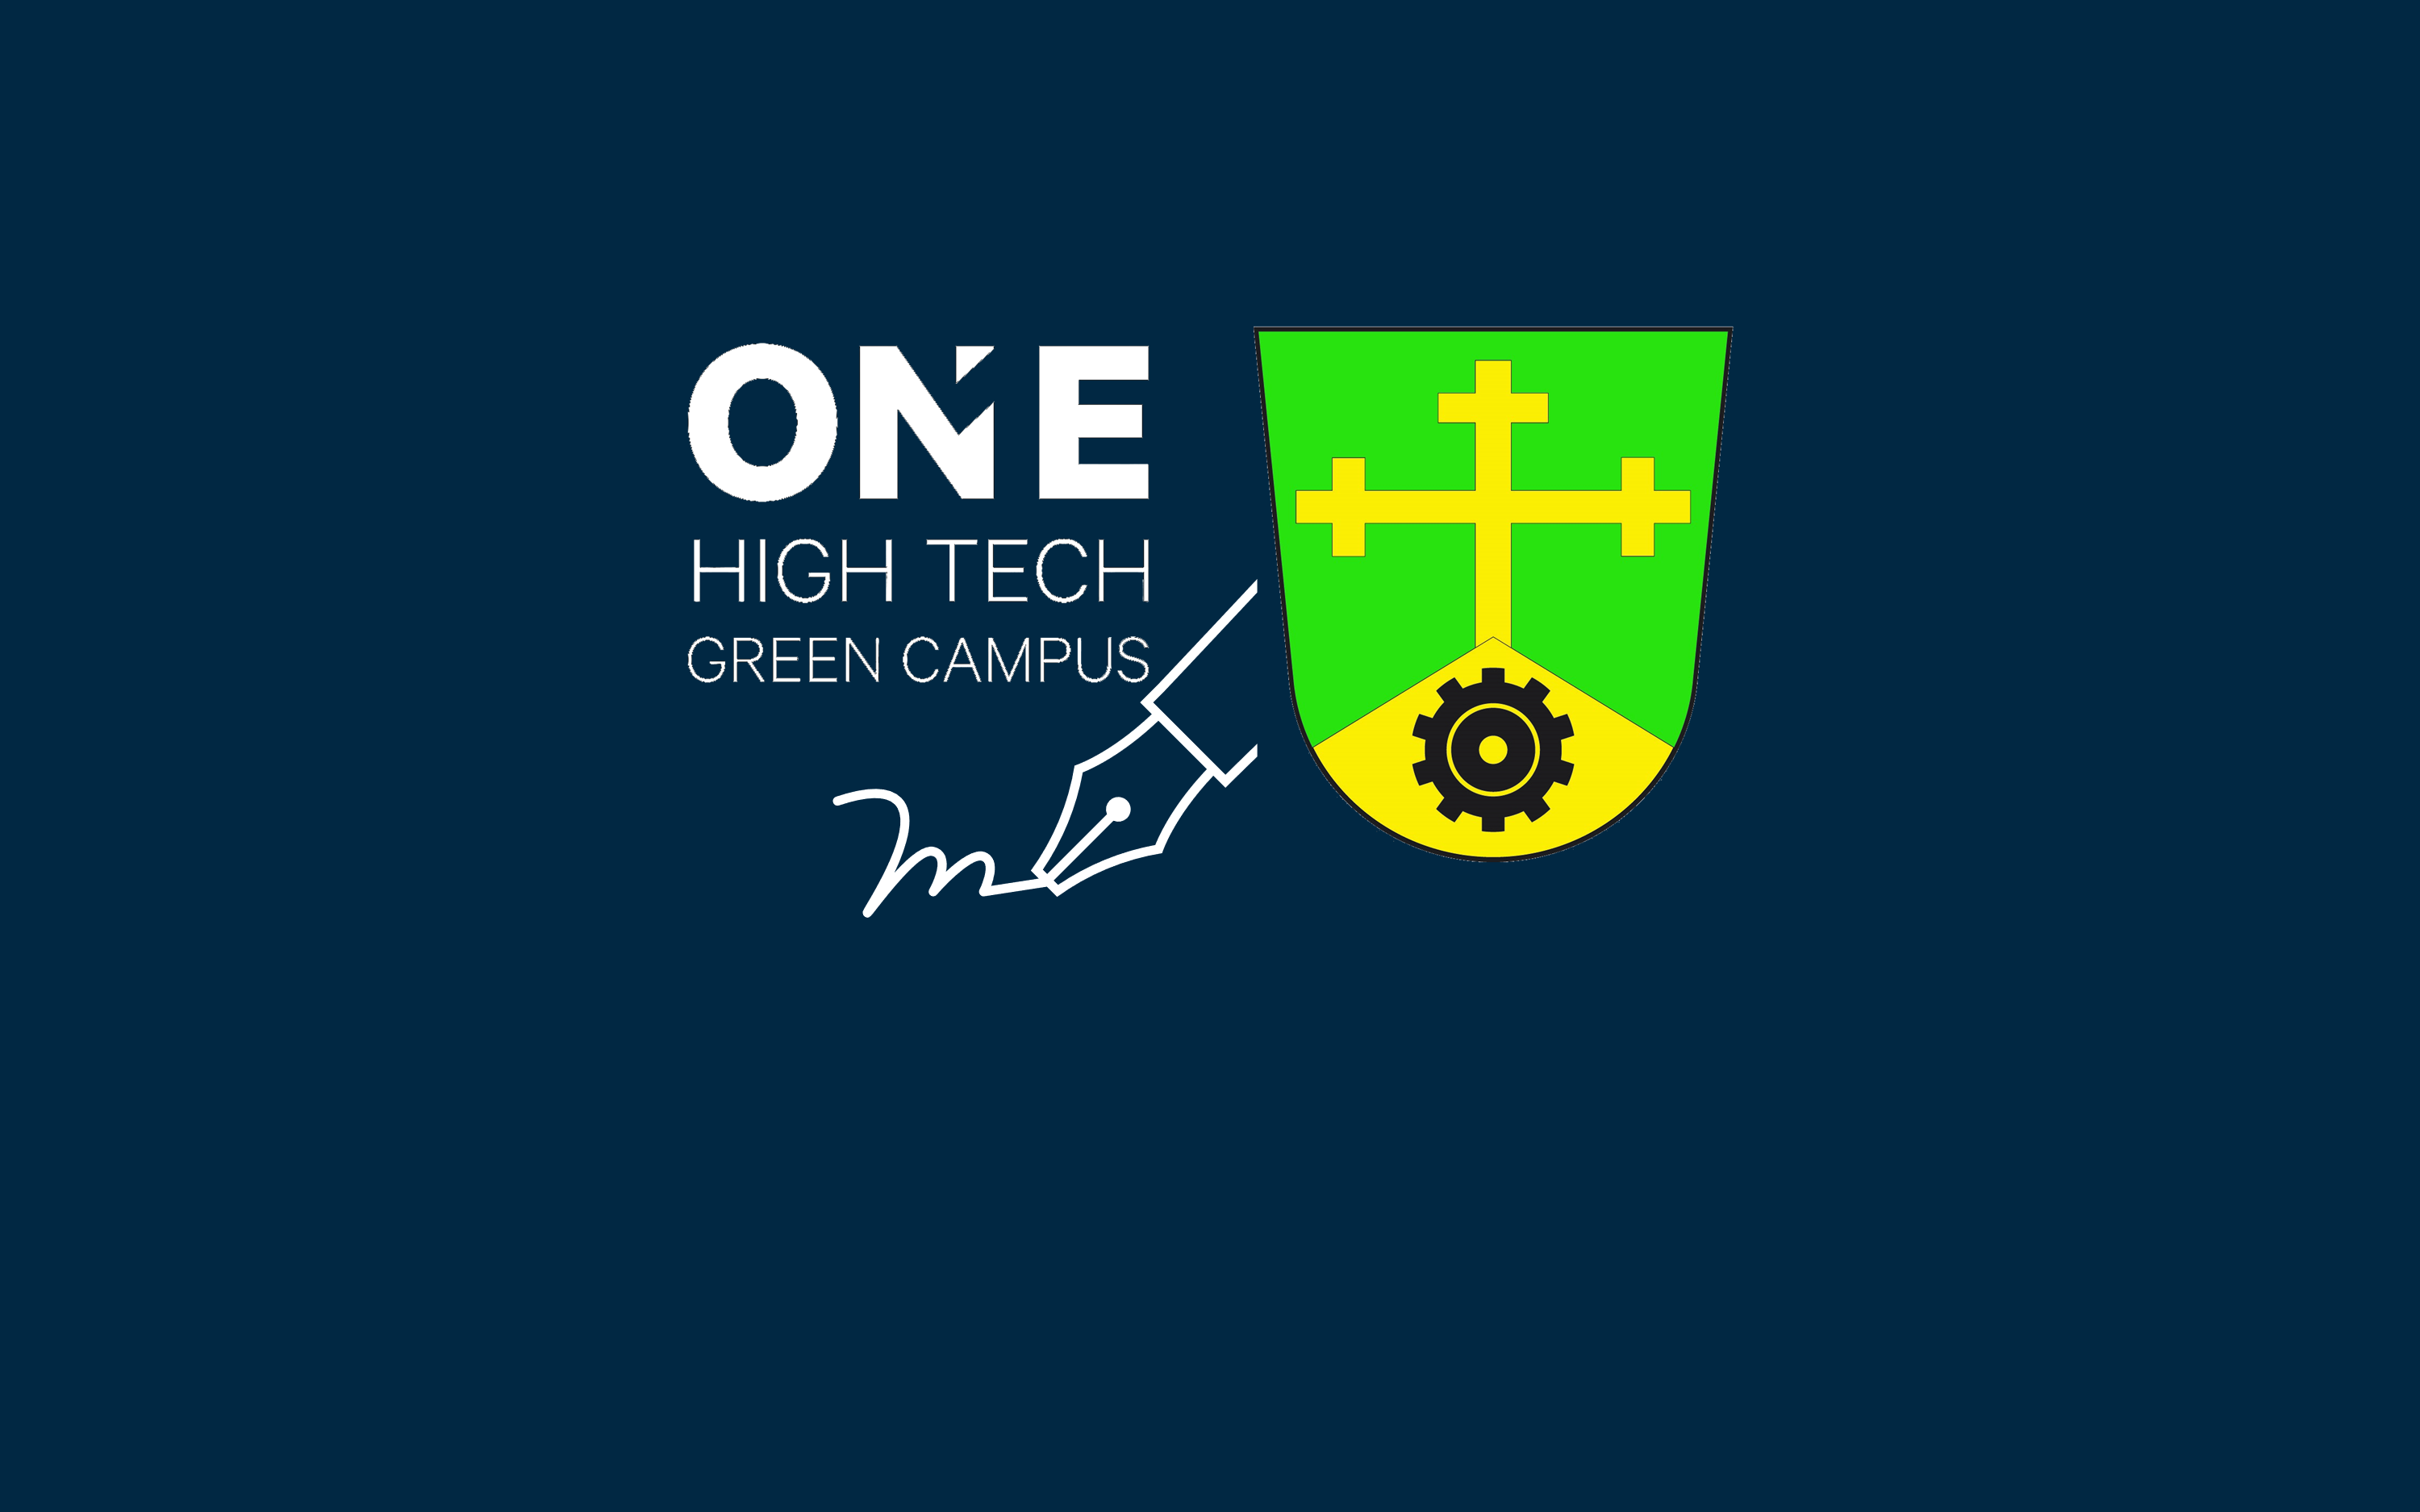 ONE High Tech Green Campus Neufahrn: Eine aufregende Zukunft erwartet uns!